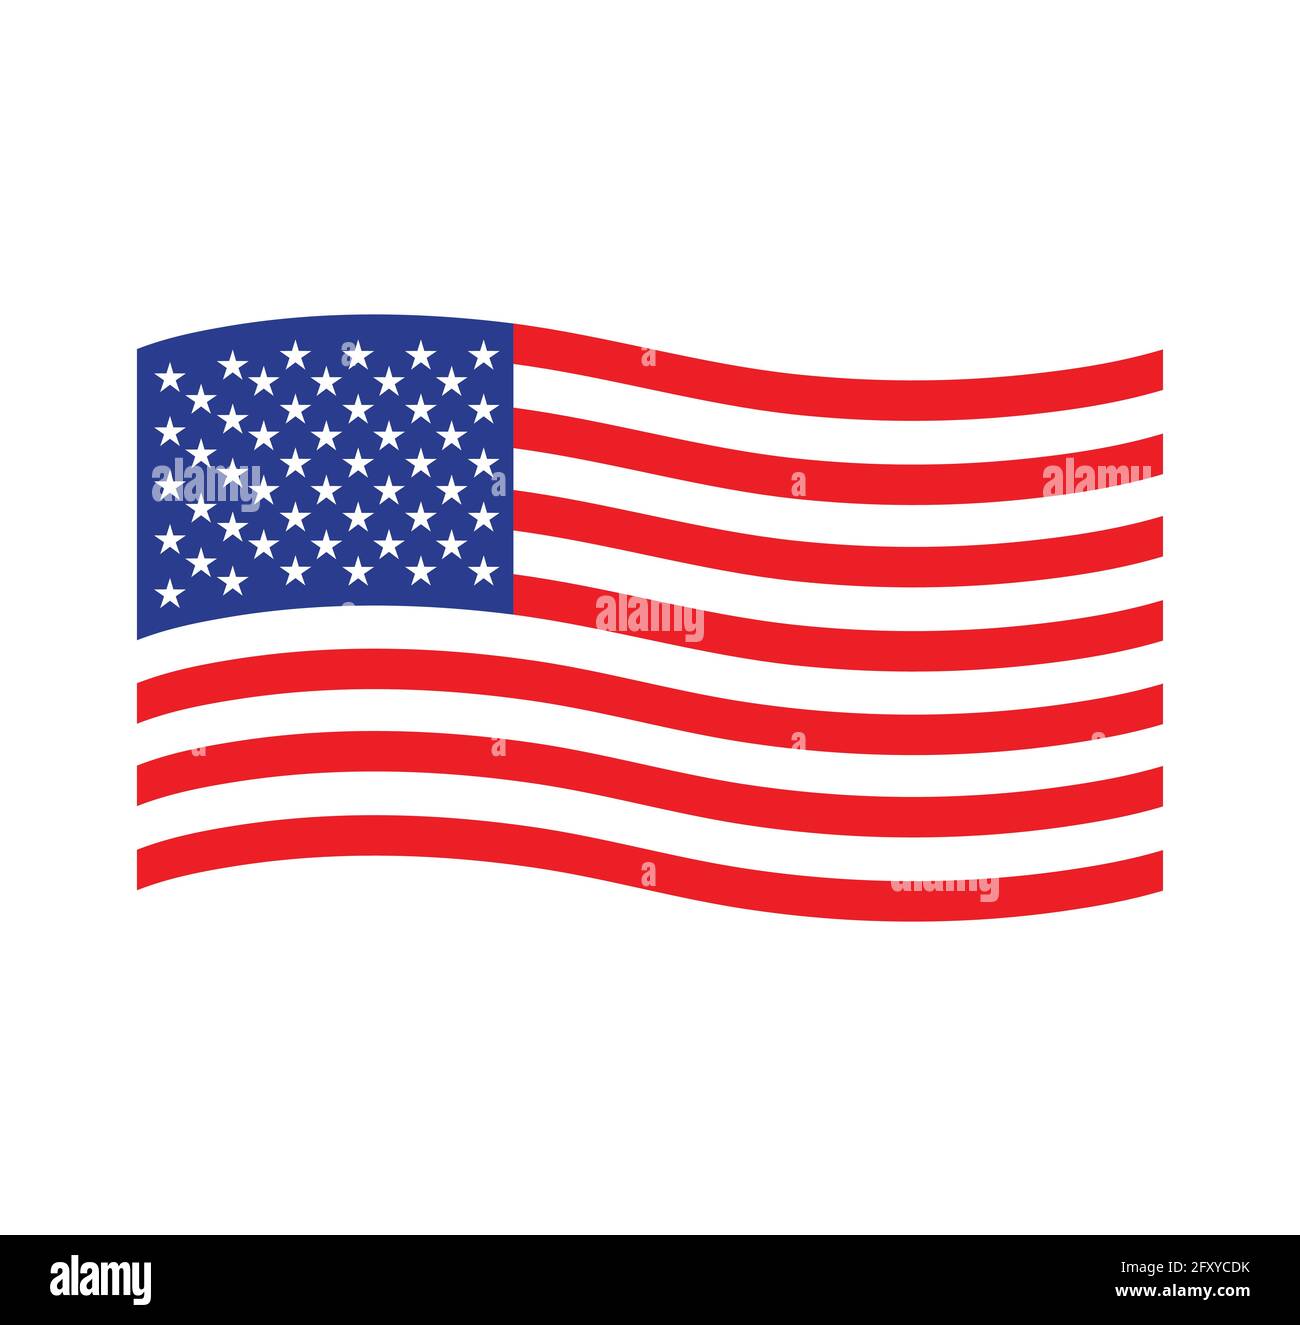 American waving flag vector icône. Symbole national, rouge, blanc et bleu avec des étoiles Illustration de Vecteur